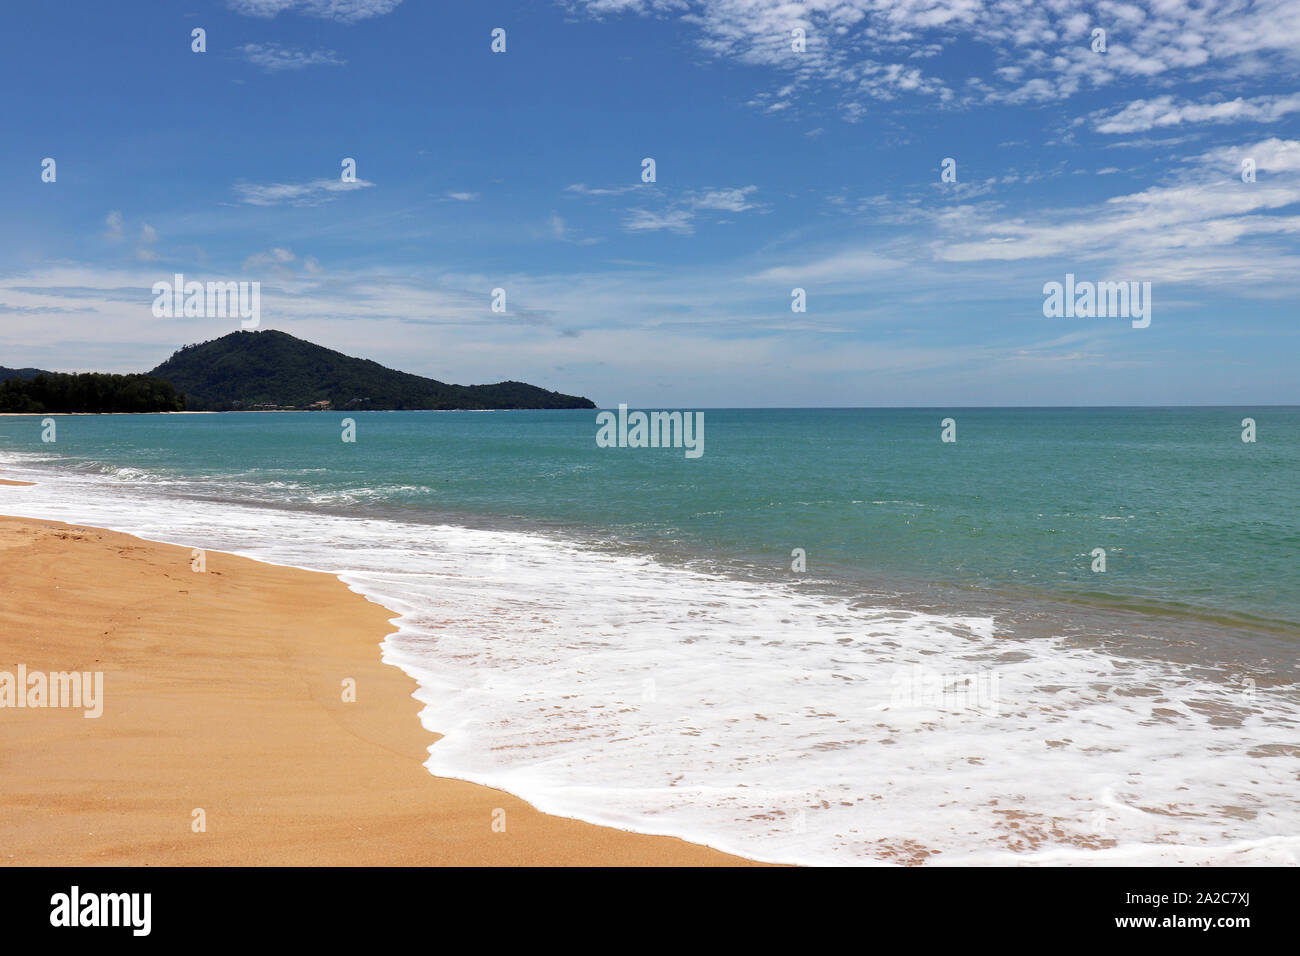 La plage de sable tropicale, vue panoramique de la côte de la mer vide avec du sable jaune, vert forêt et montagnes. Seascape pittoresque avec ciel bleu et nuages blancs Banque D'Images